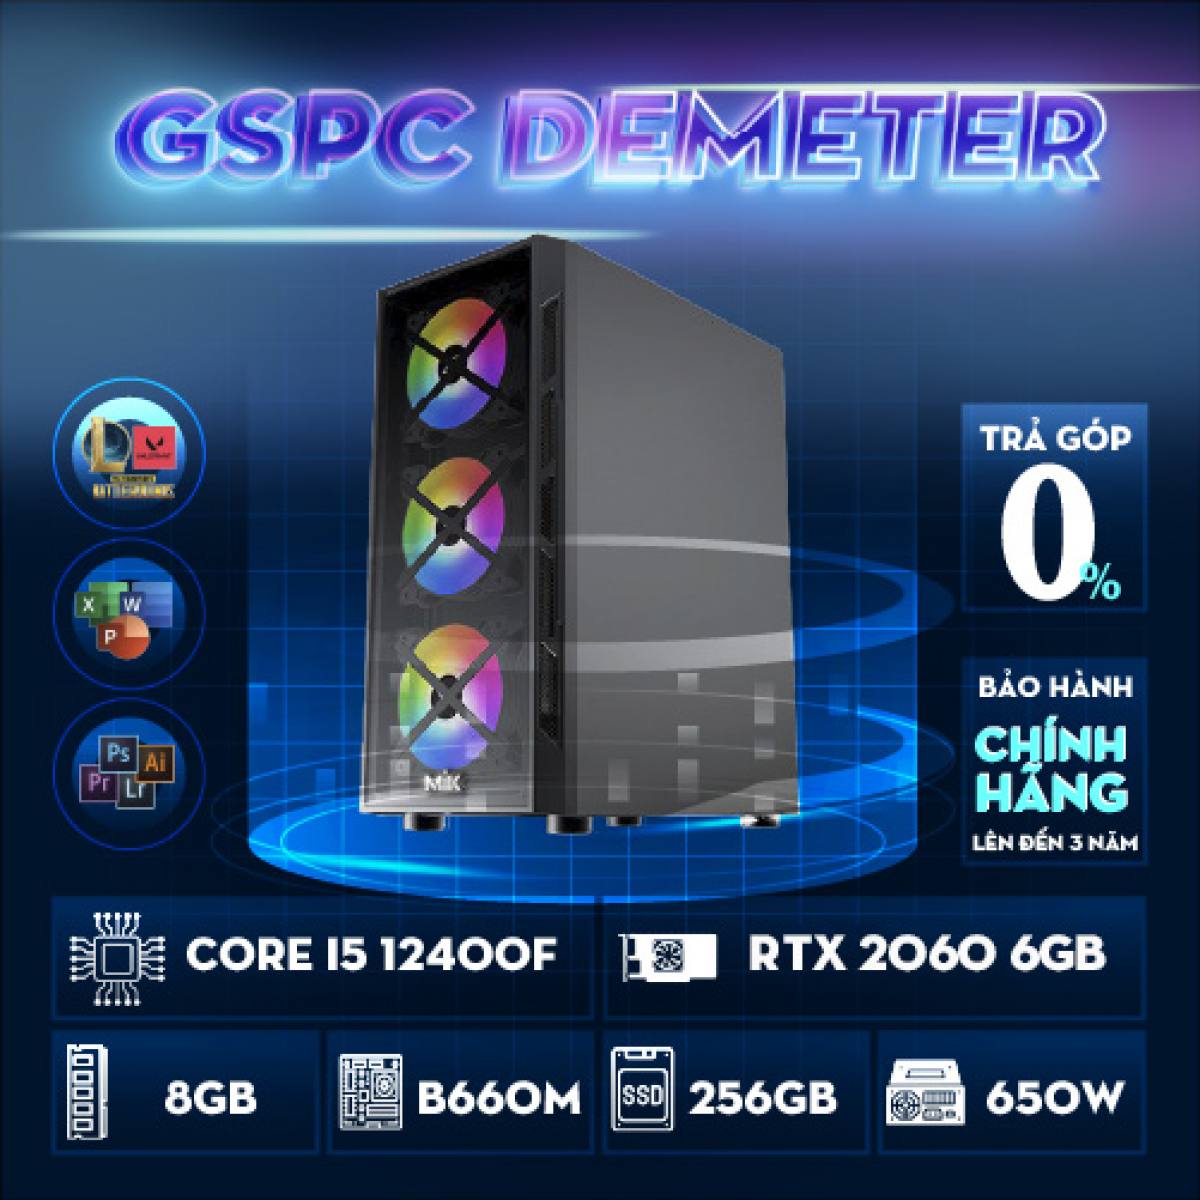 GSPC Demeter (i5 12400f - B660M - 8GB - RTX 2060 - 256GB)